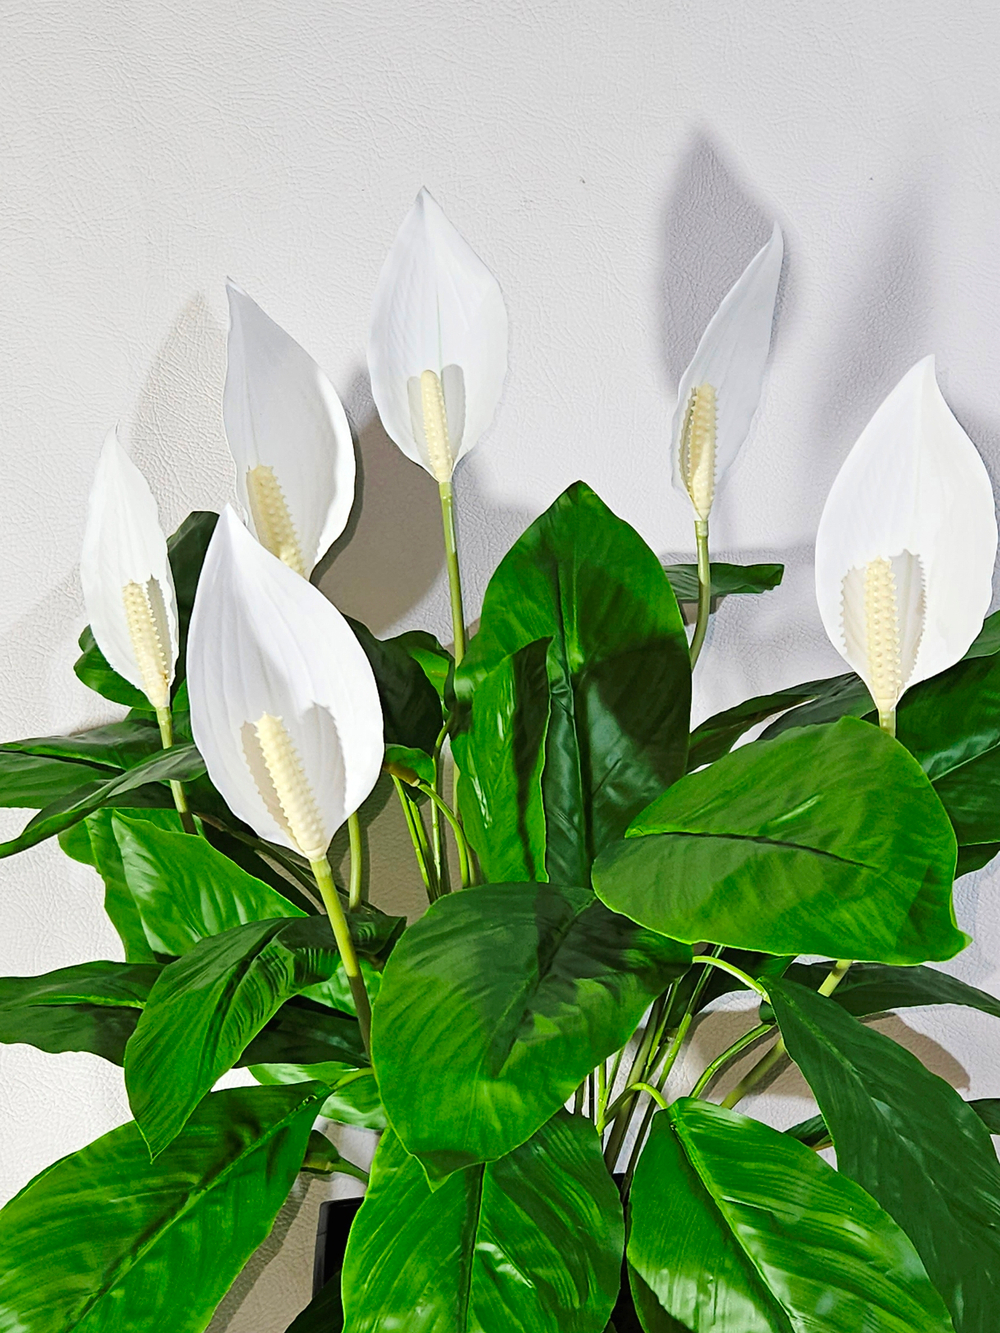 Искусственные цветы Спатифиллум белый средний в высоком коричневом кашпо 36см